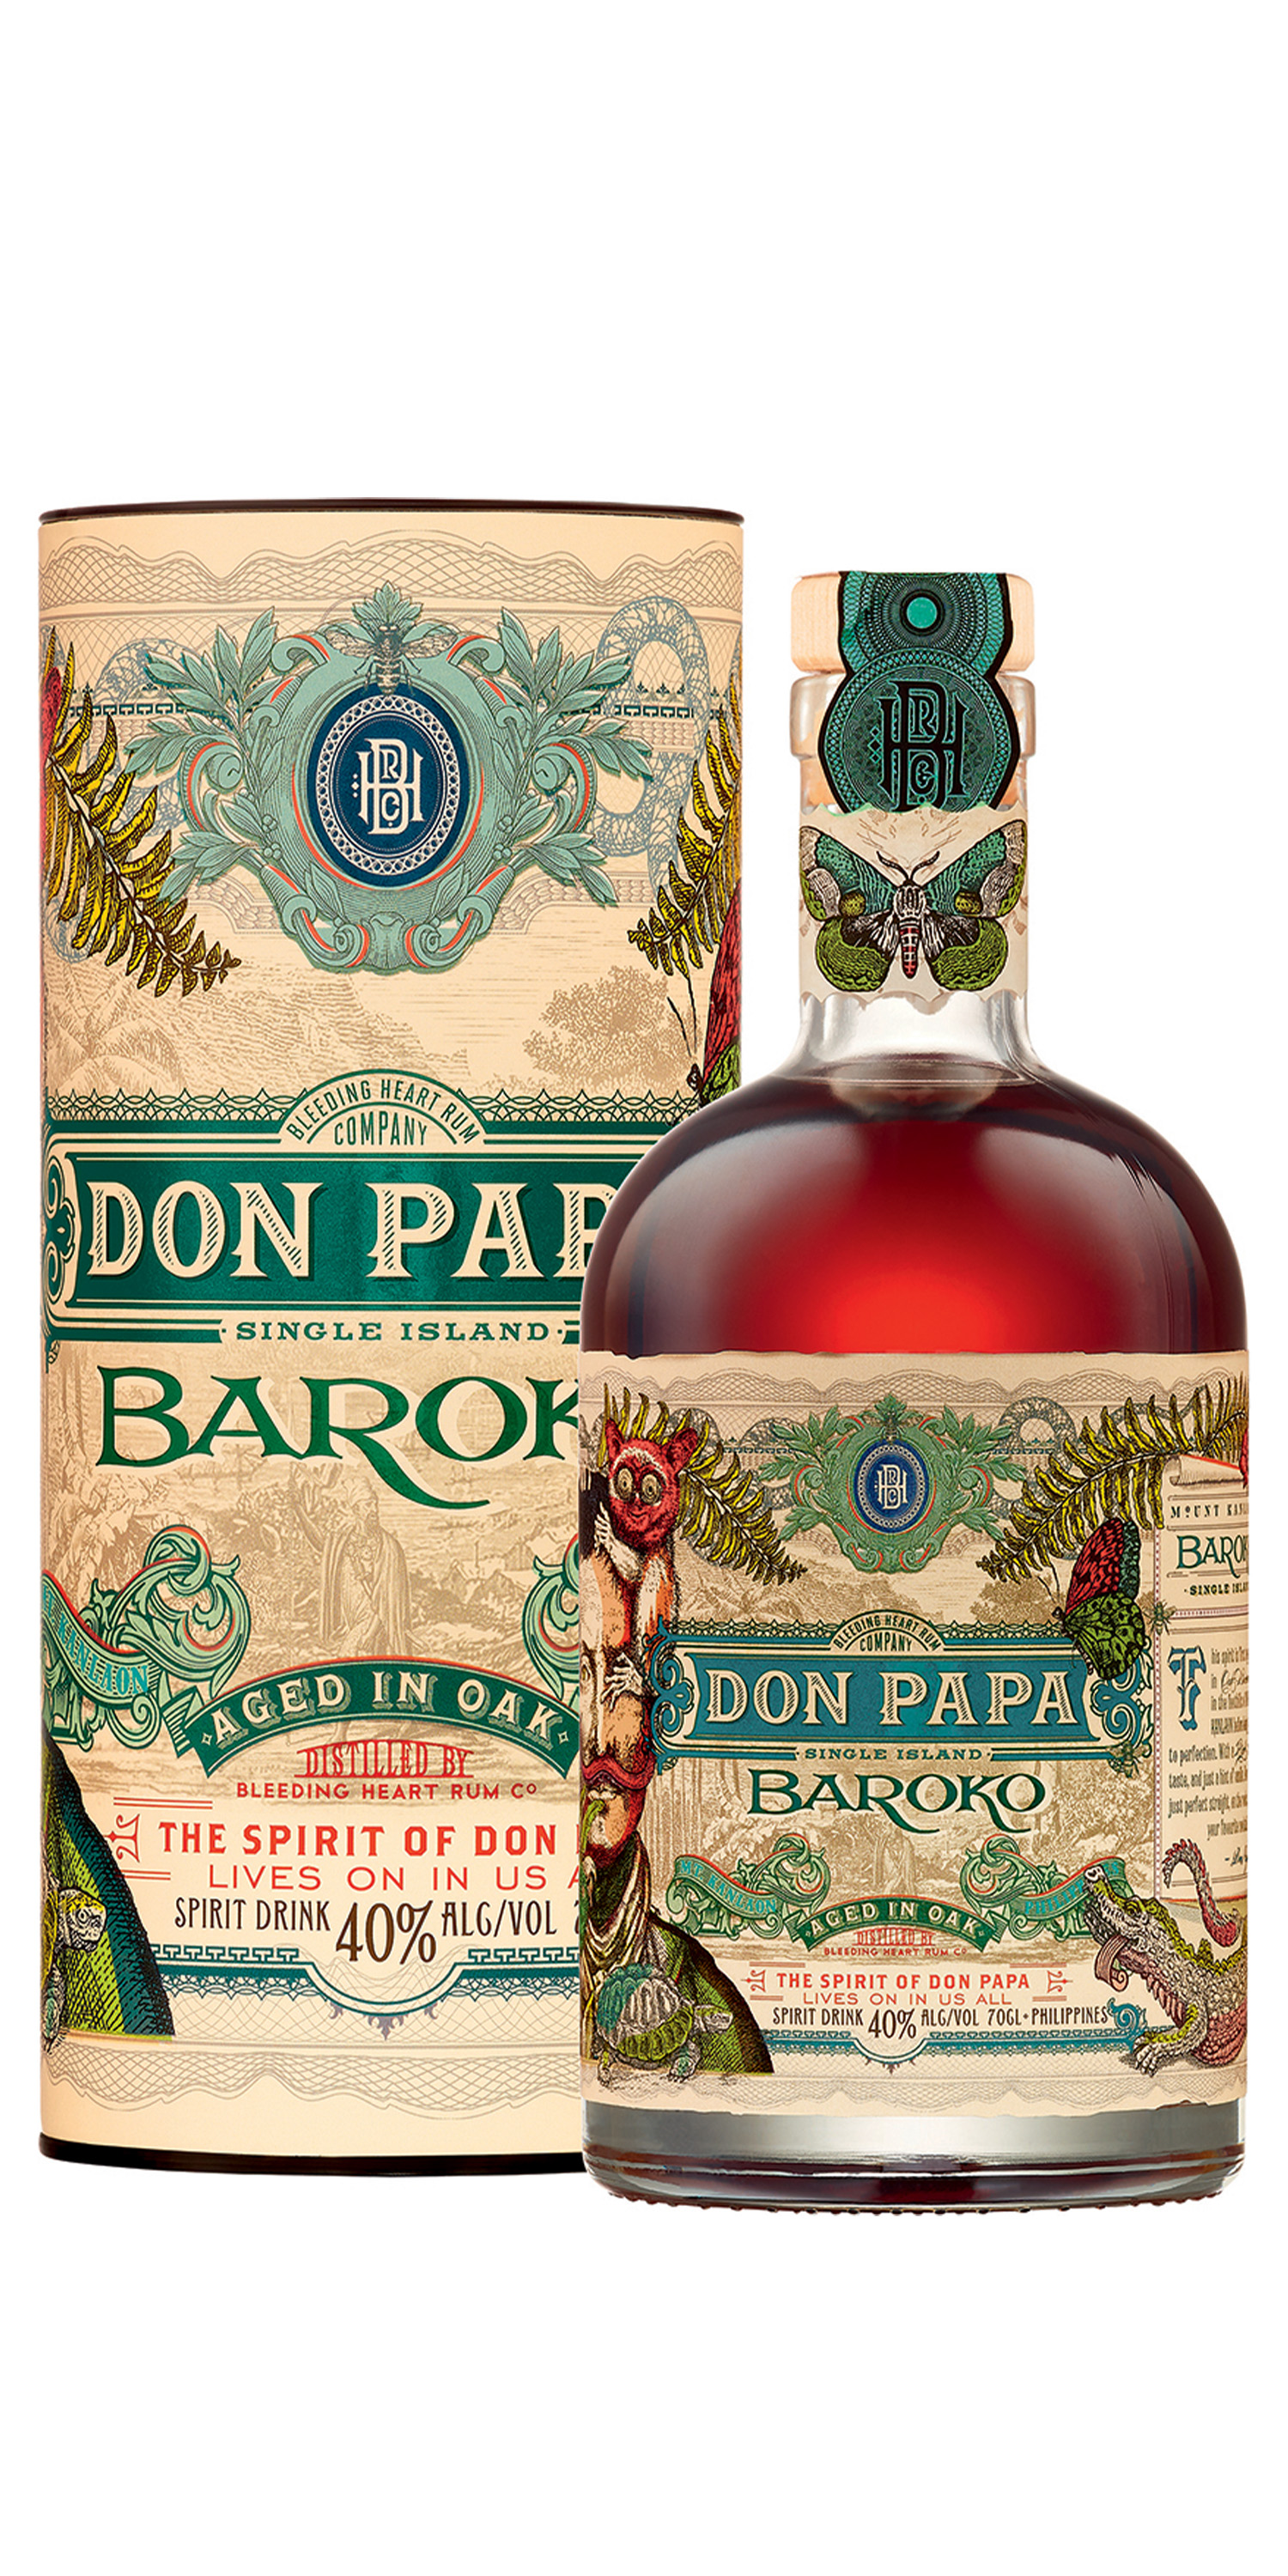 Alcool Don Papa Baroko *  Amstein SA - L'ambassadeur de la bière